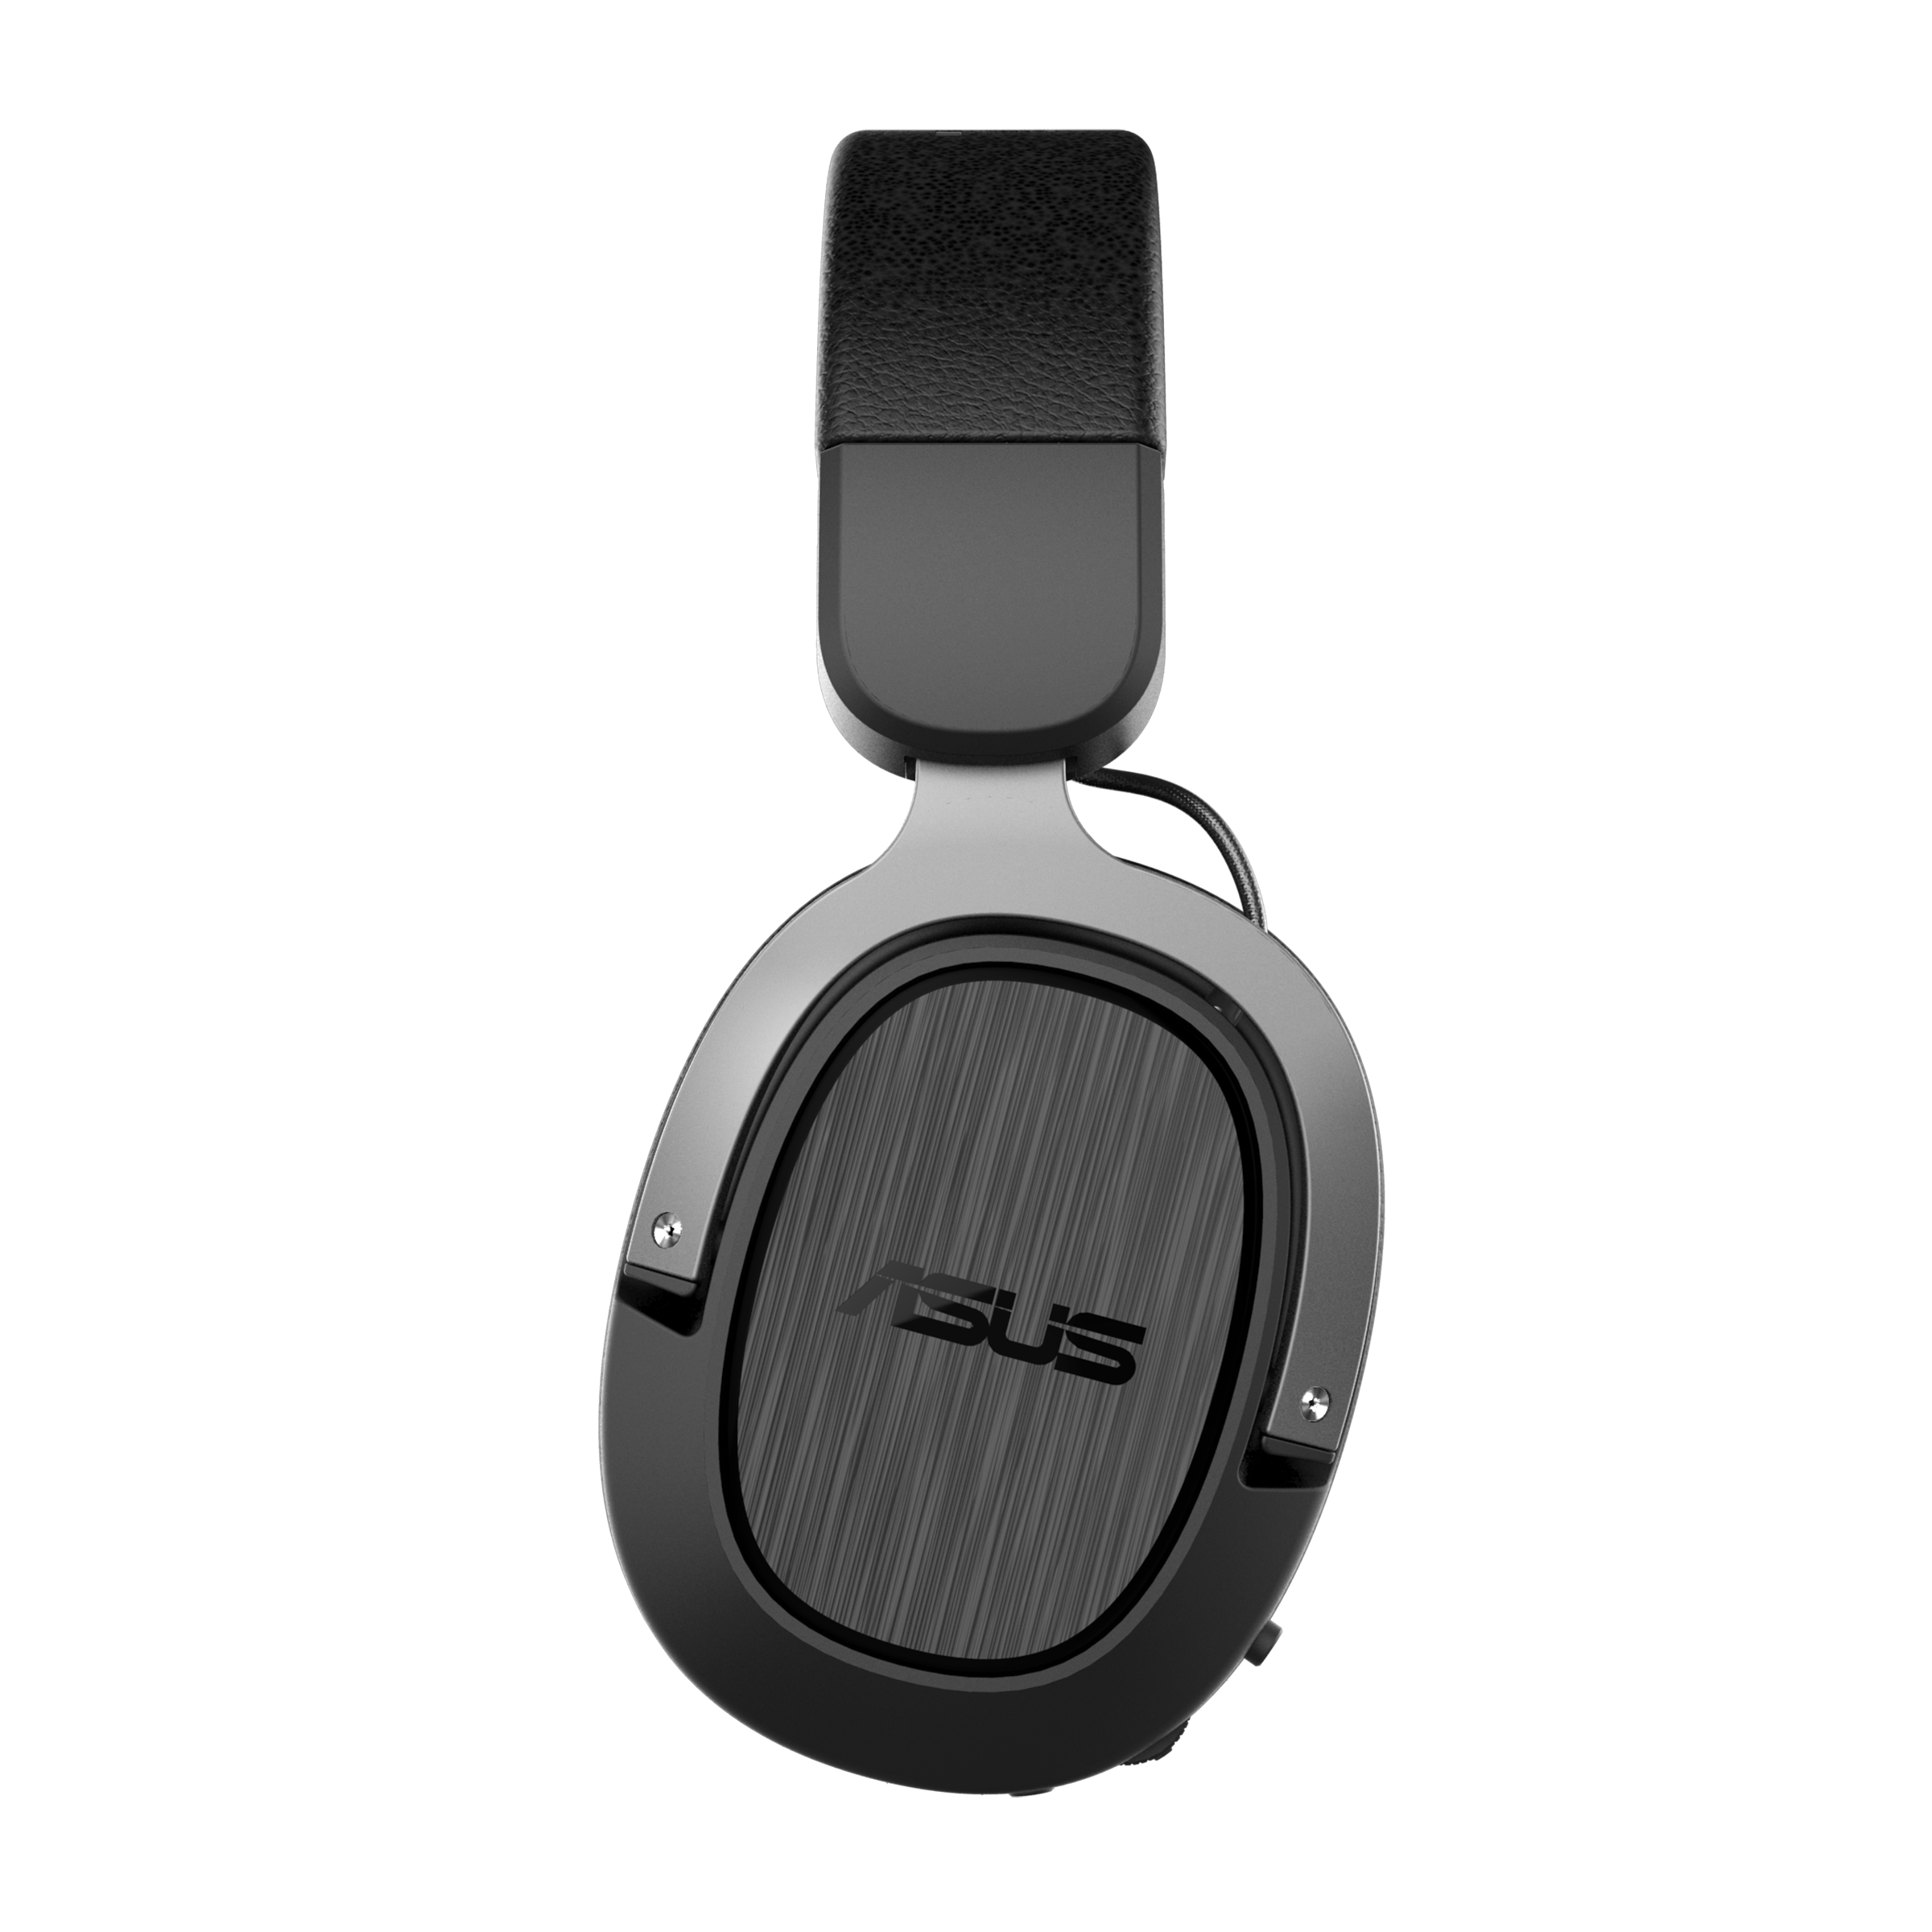 Asus TUF Játékos H3 Vezeték nélküli vezeték nélküli fejhallgató